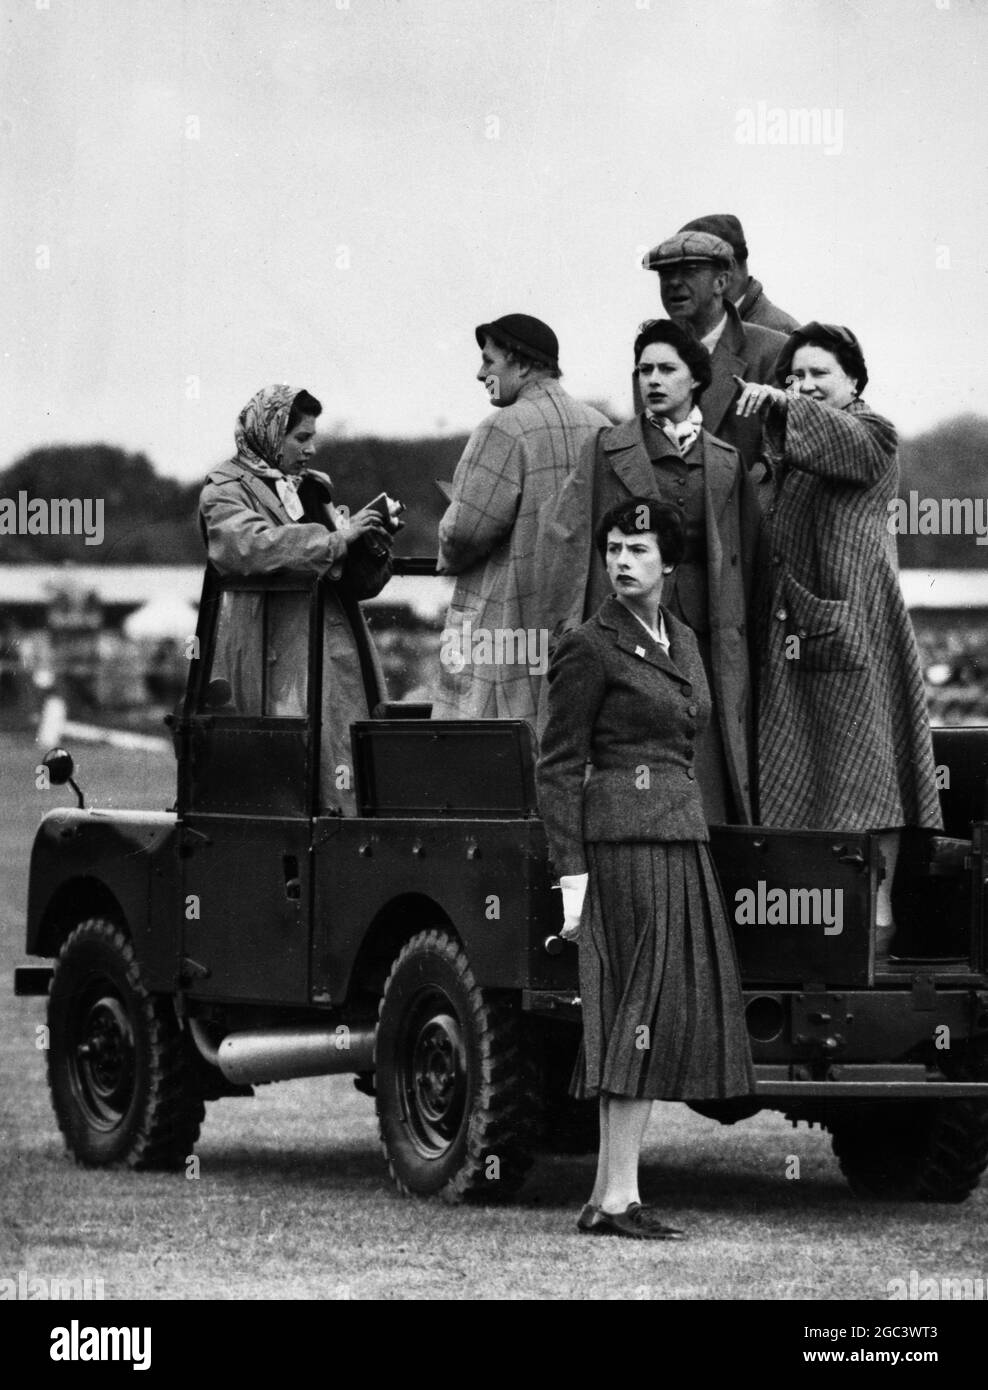 Königin Elizabeth (mit einer Filmkamera); die Königin Mutter, und Prinzessin Margaret, mit Mitgliedern ihrer Partei (nicht identifiziert), beobachten den dritten Tag der Europäischen Pferdetrials von einem Land Rover in Windsor Great Park, angrenzend an die Grenze zu den Bergen von Surrey, England. 20 Mai 1955 Stockfoto